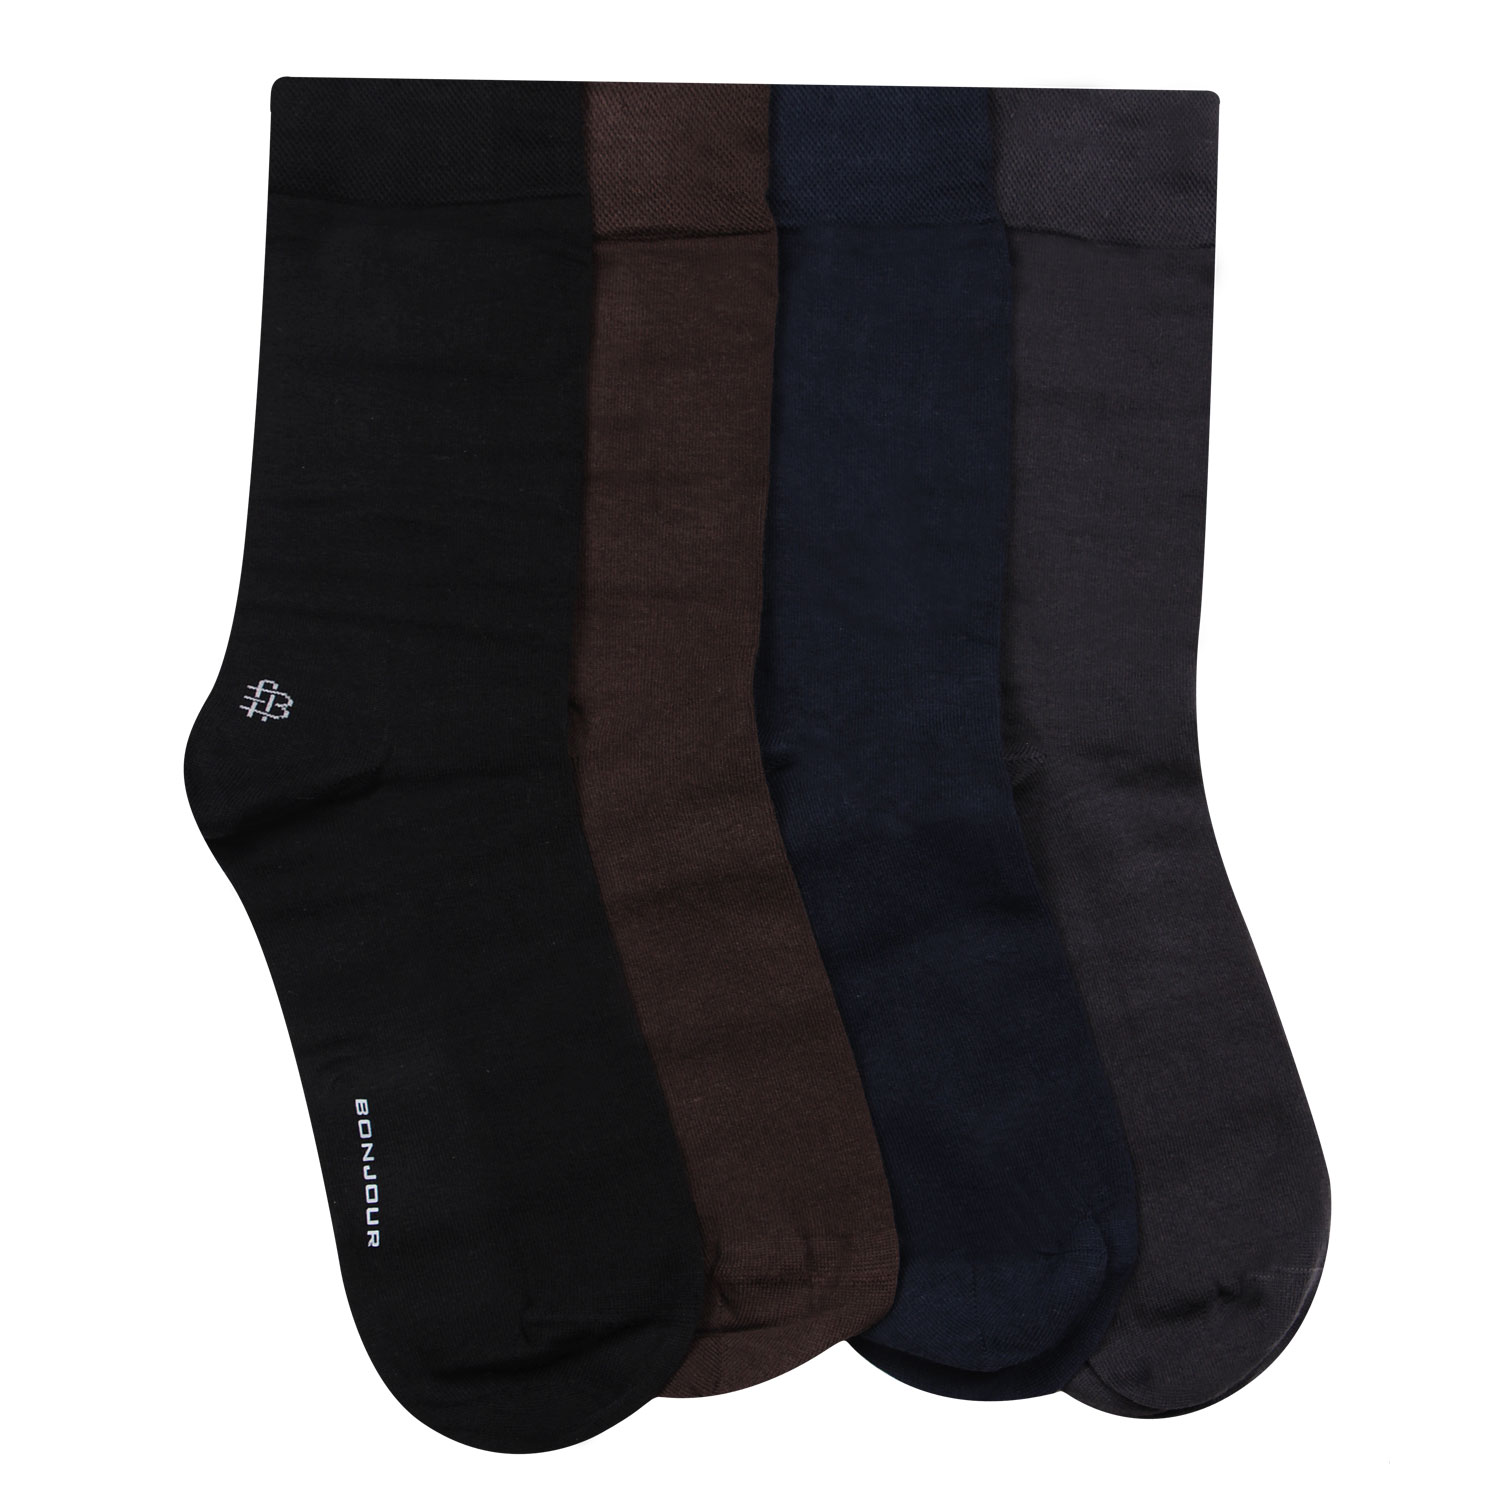 Buy Bonjour Odour free plain Socks for Men with Bonjour logo Pack of 4 ...